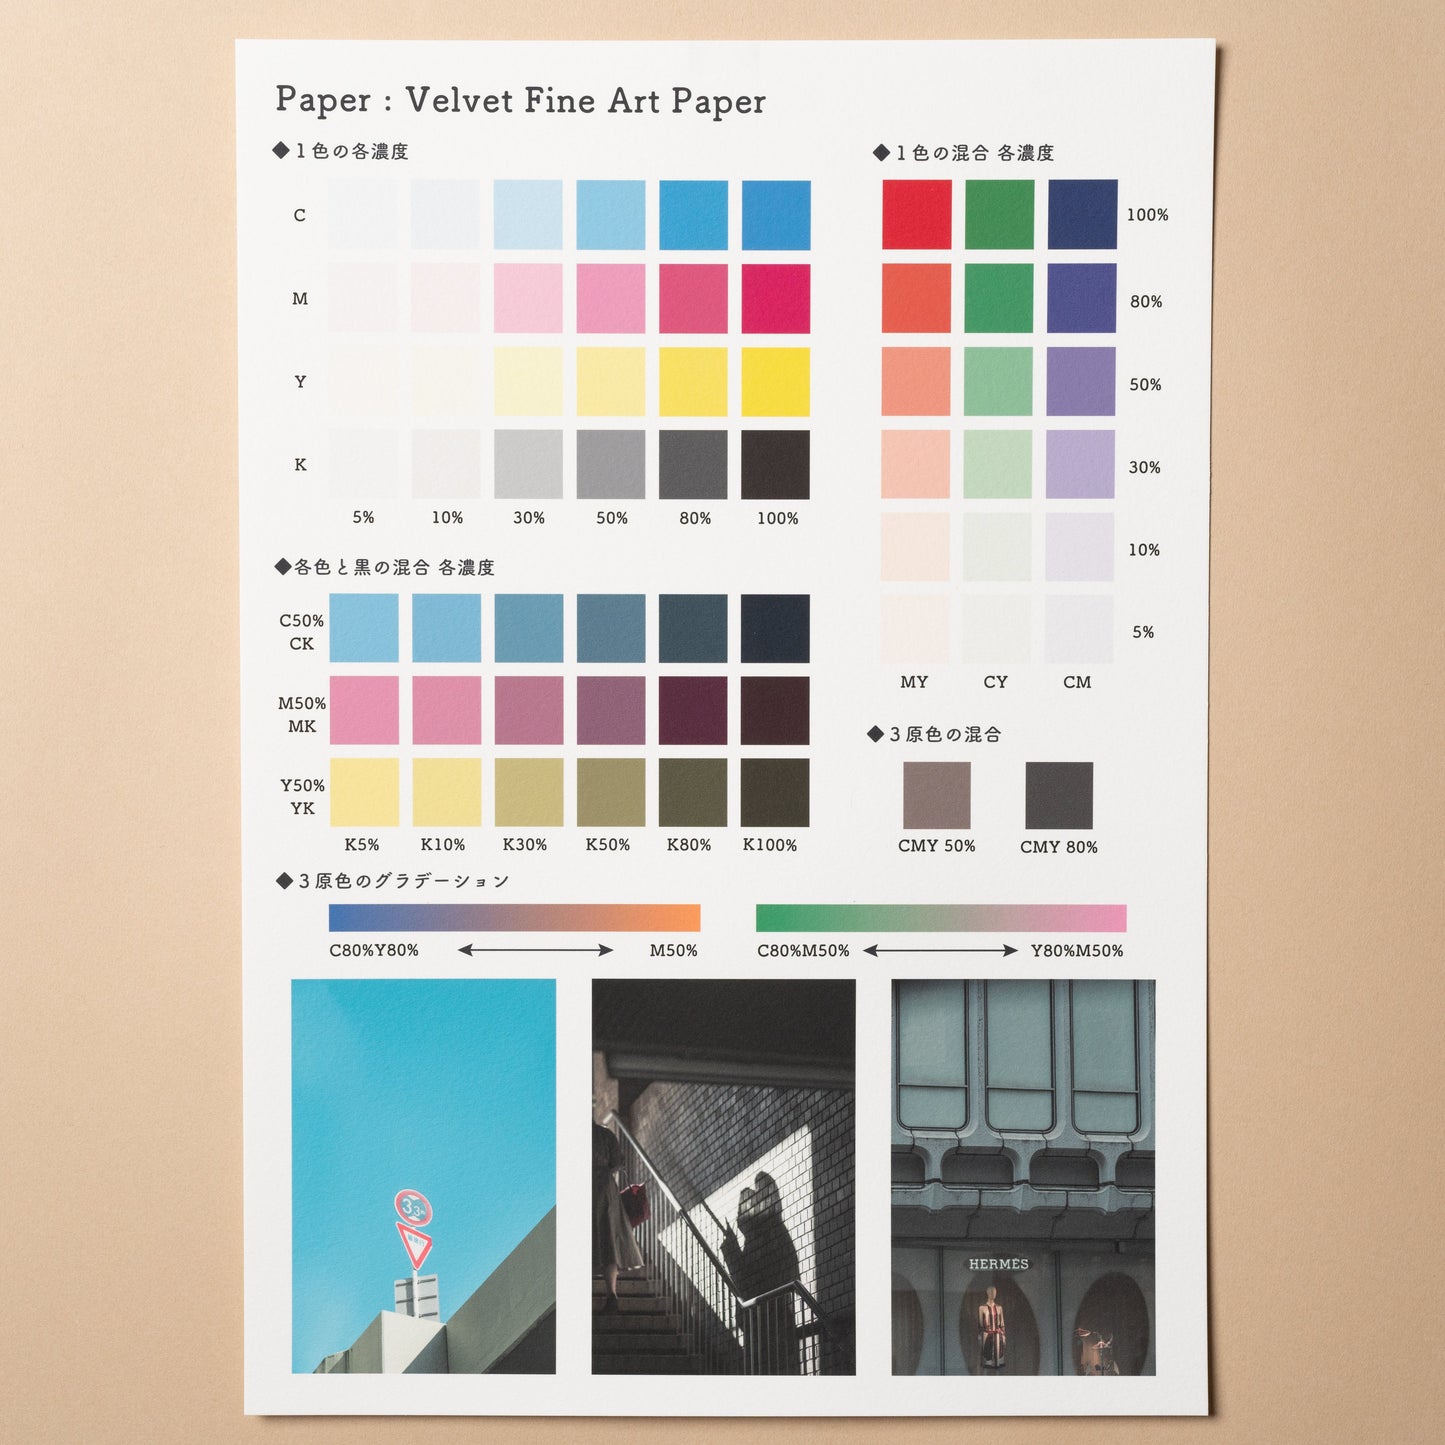 【EPSON】Velvet Fine Art Paper - イーワン大判プリント【最大B0サイズの大判印刷サービス】